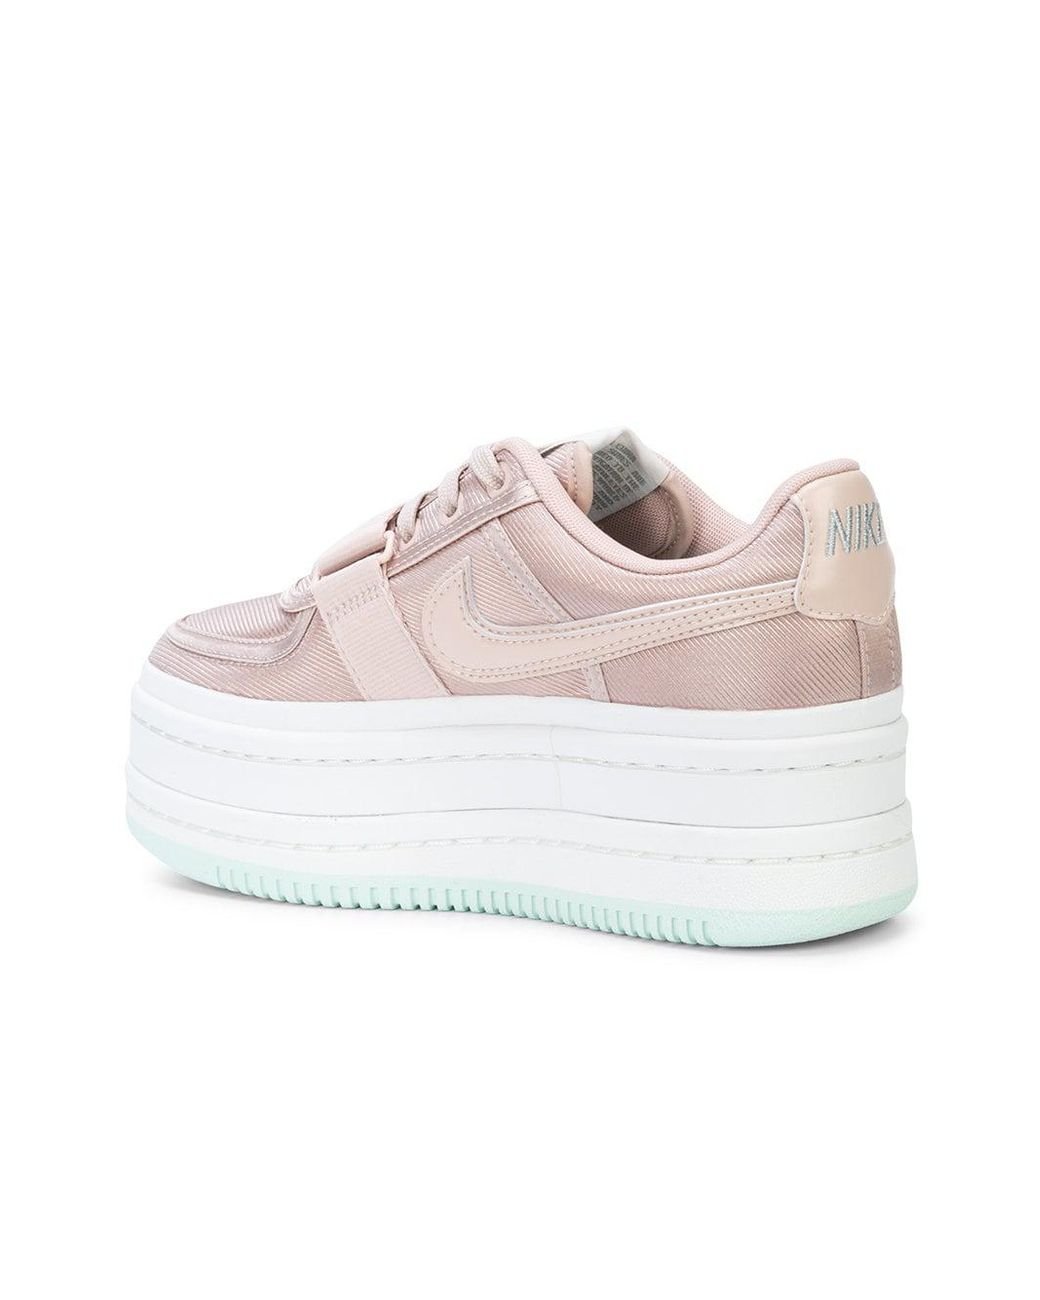 Nike Vandal 2k Sneakers in Pink | Lyst